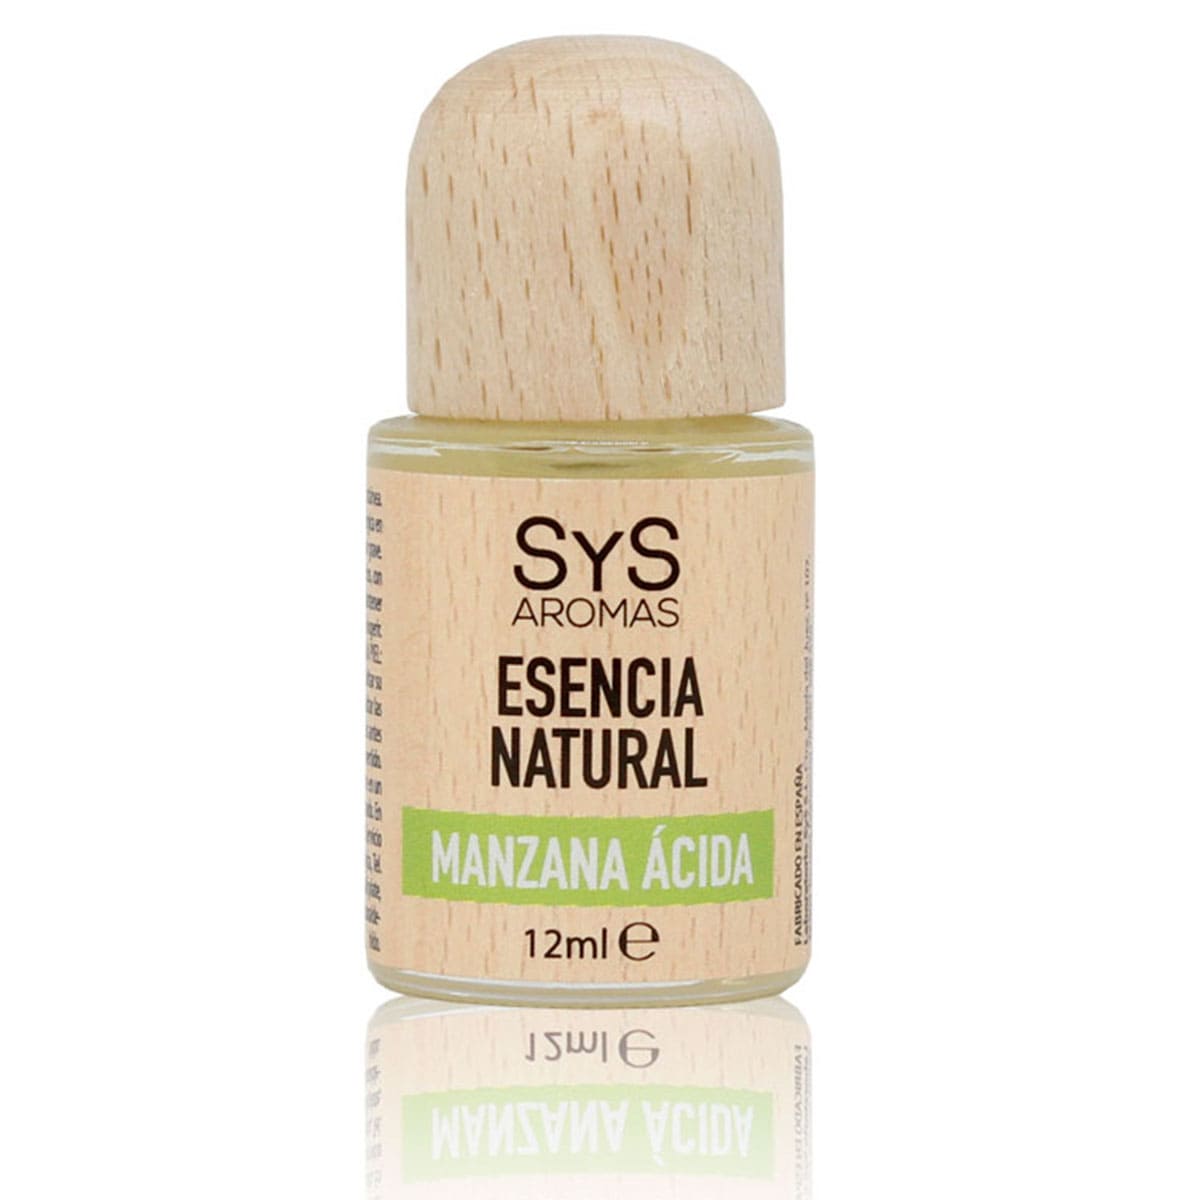 Buy Sour Apple Essence 12ml SYS Aromas